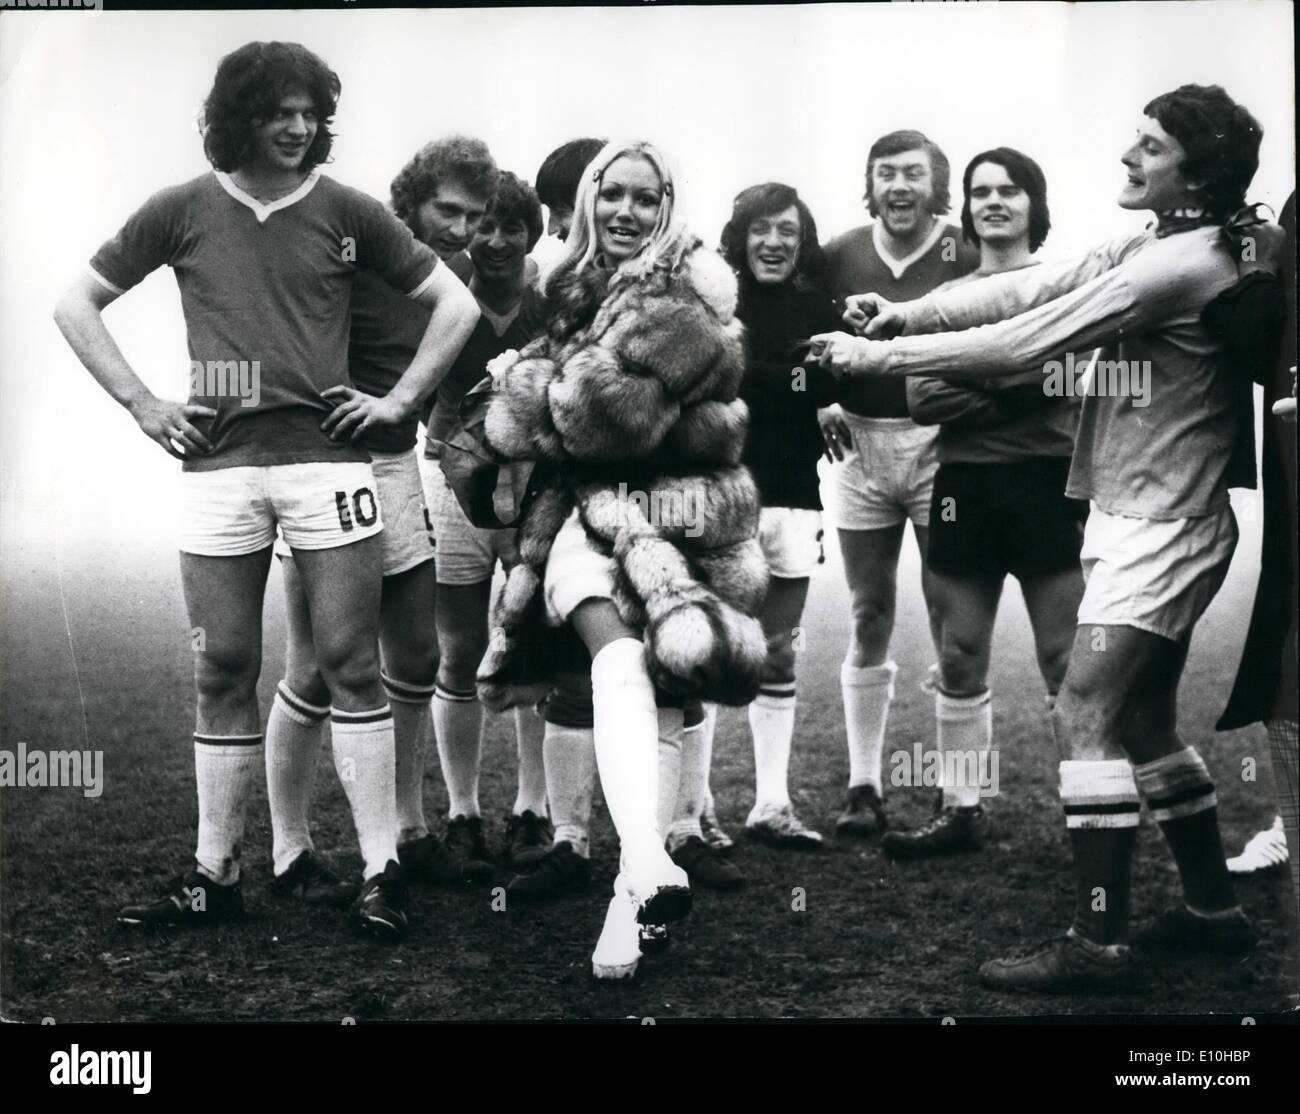 Febbraio 02, 1973 - Adrienne Posta inaugura la BBC Panto partita di calcio:  Adrienne Posta, bella bionda stella del Babà in legno " la pantomima di  Palladio, ieri scambiato il suo ruolo